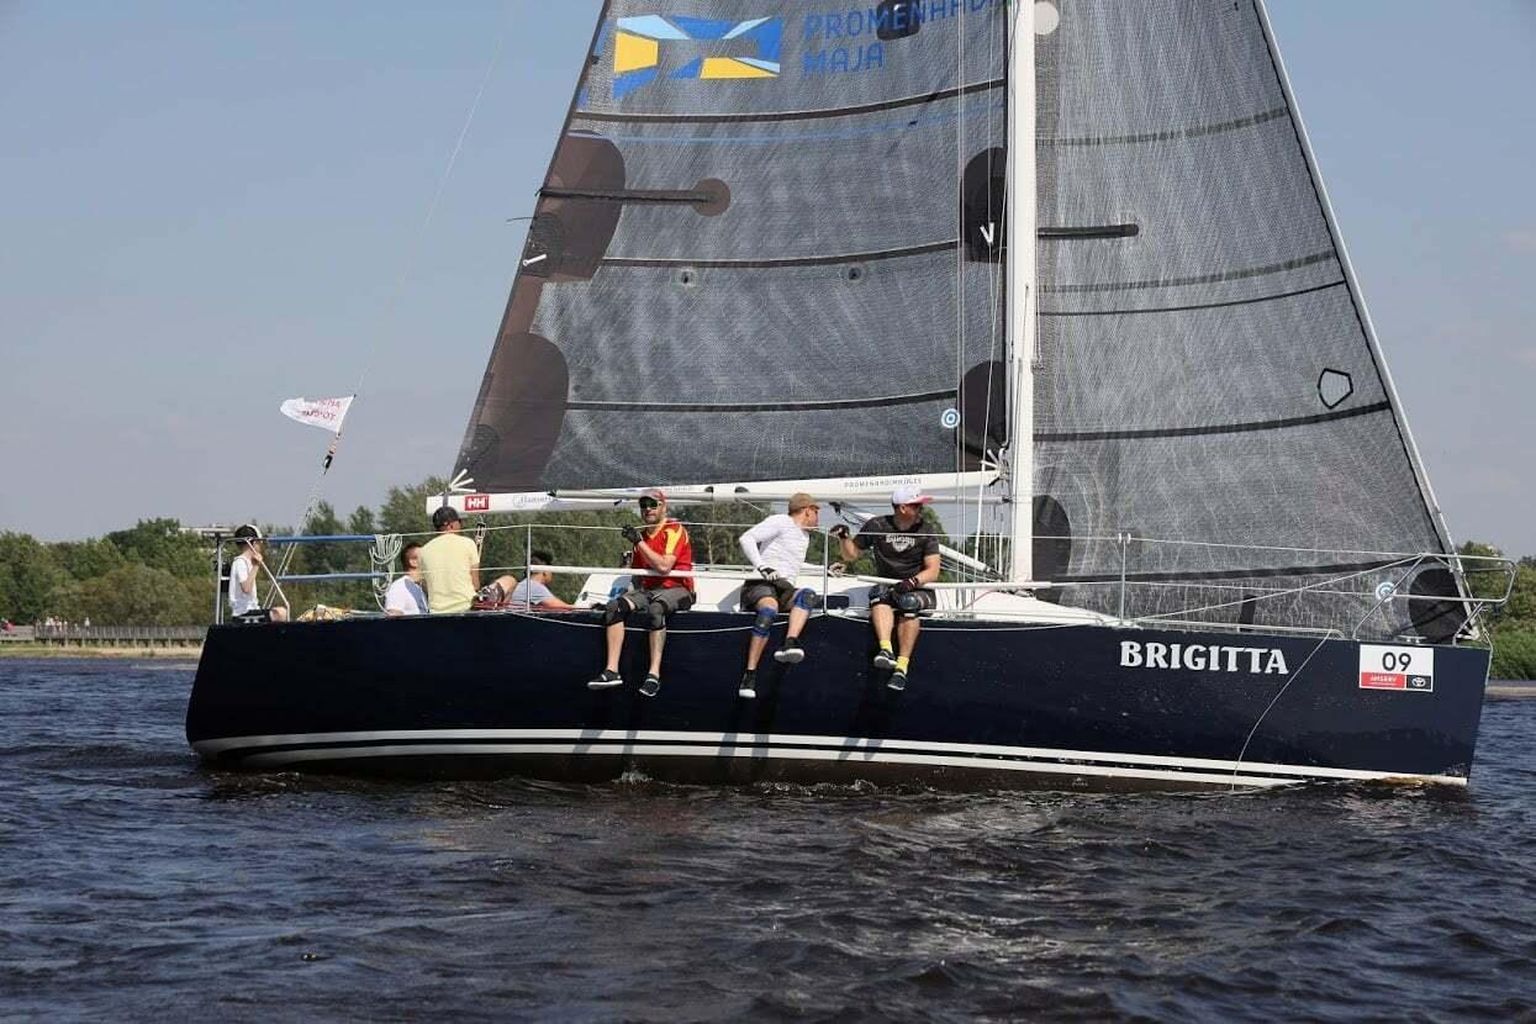 Brigitta võistkond pani väiksemate purjekate konkurentsis oma paremuse veenva ülekaaluga maksma.